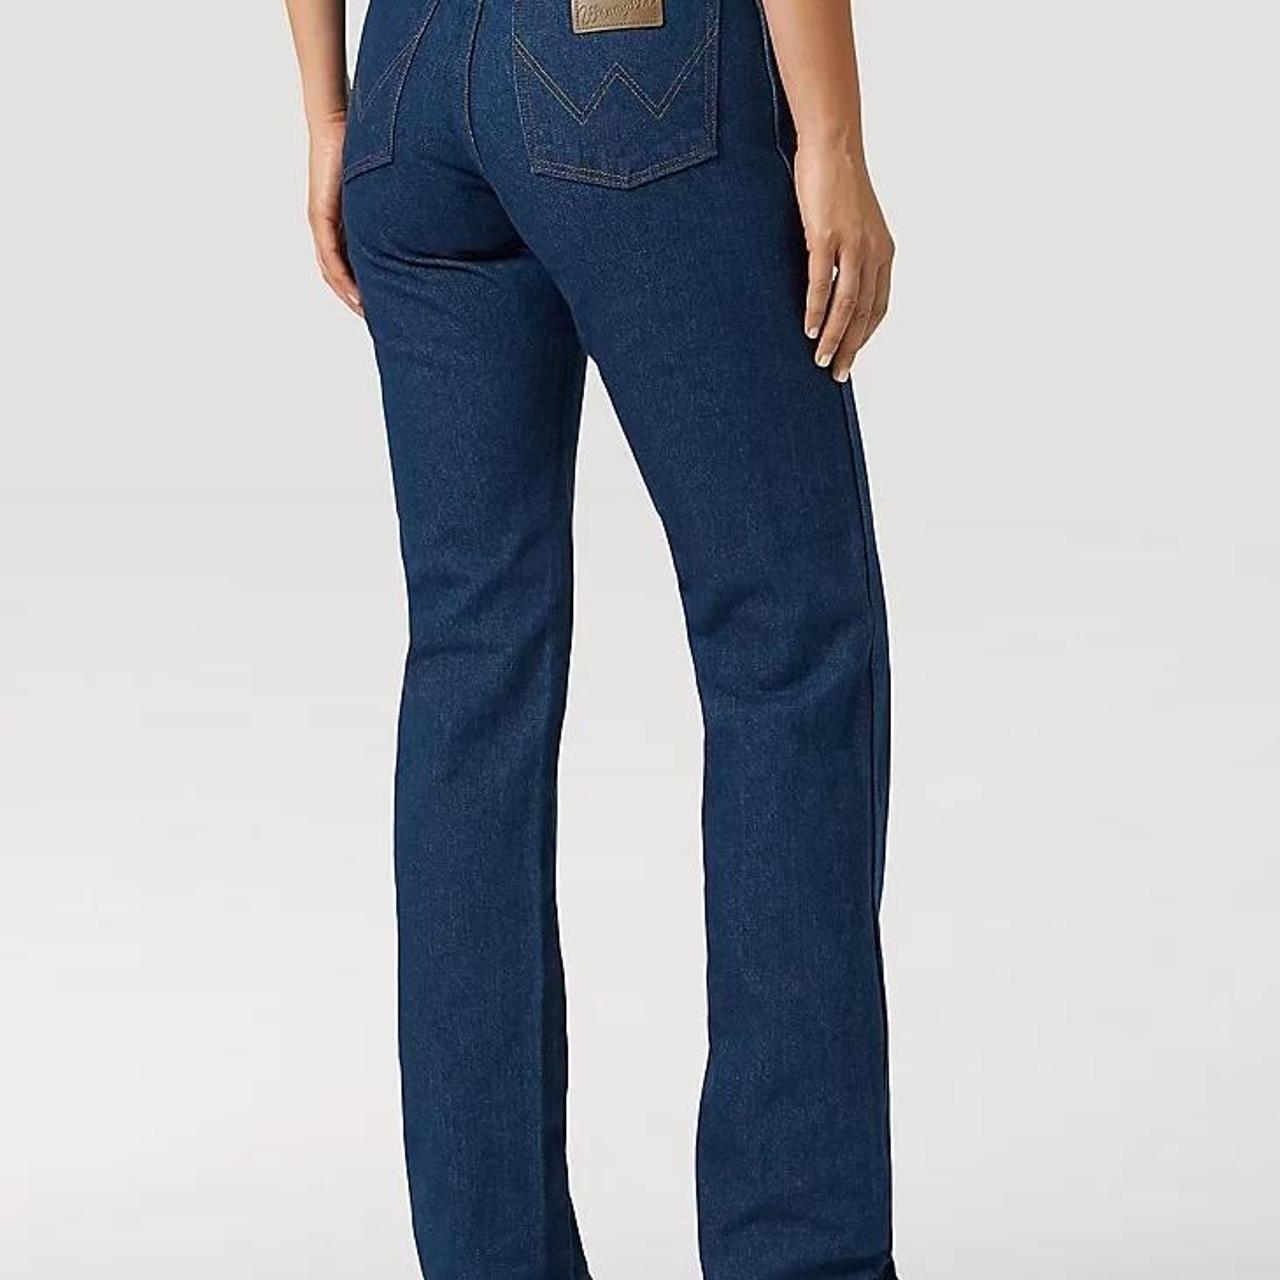 Wrangler 14MWZ Women’s Western Cowboy Cut jeans, new... - Depop